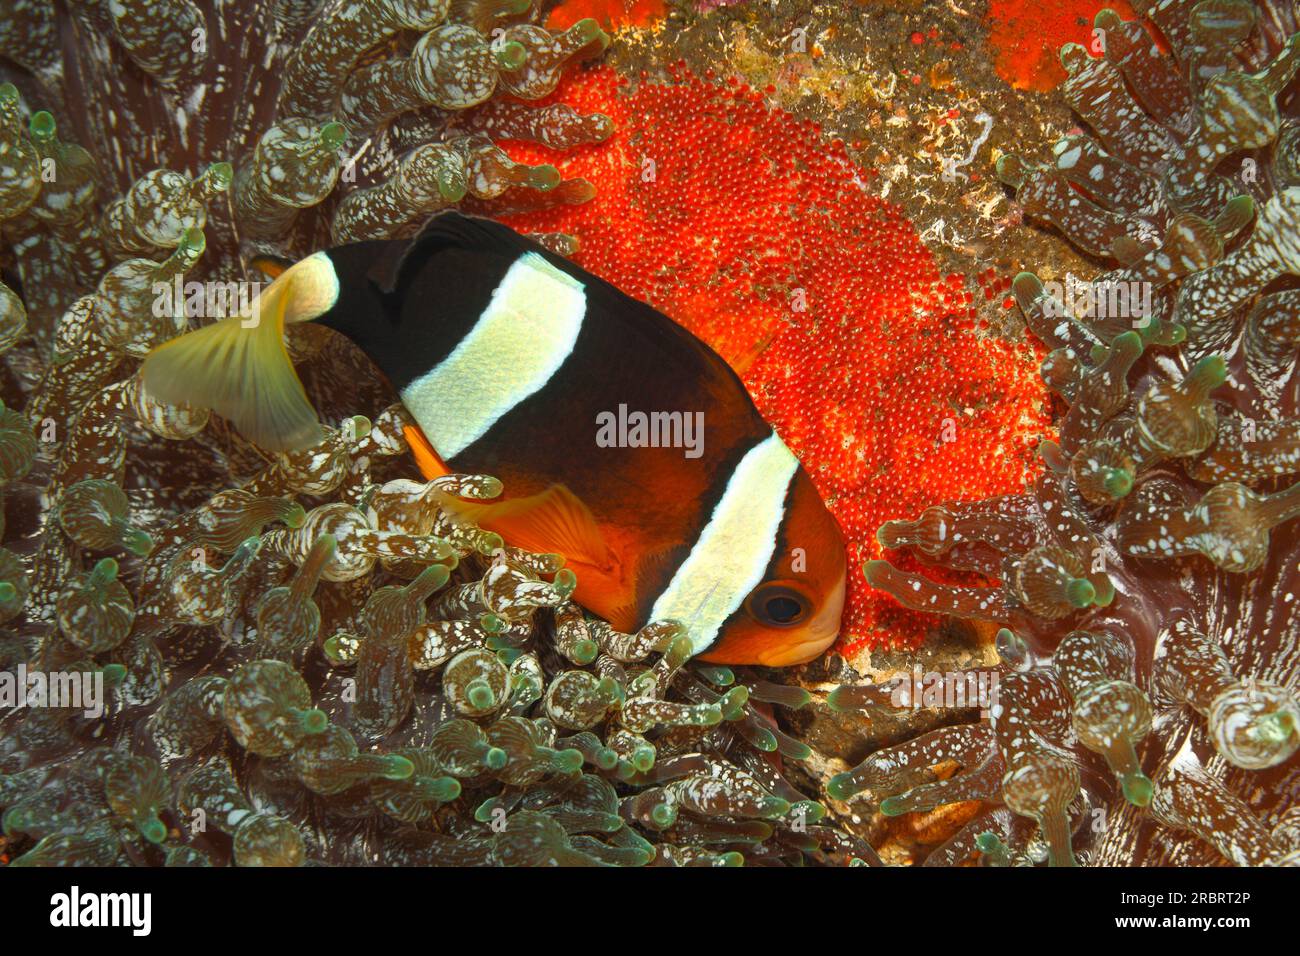 Pesce bolla immagini e fotografie stock ad alta risoluzione - Alamy